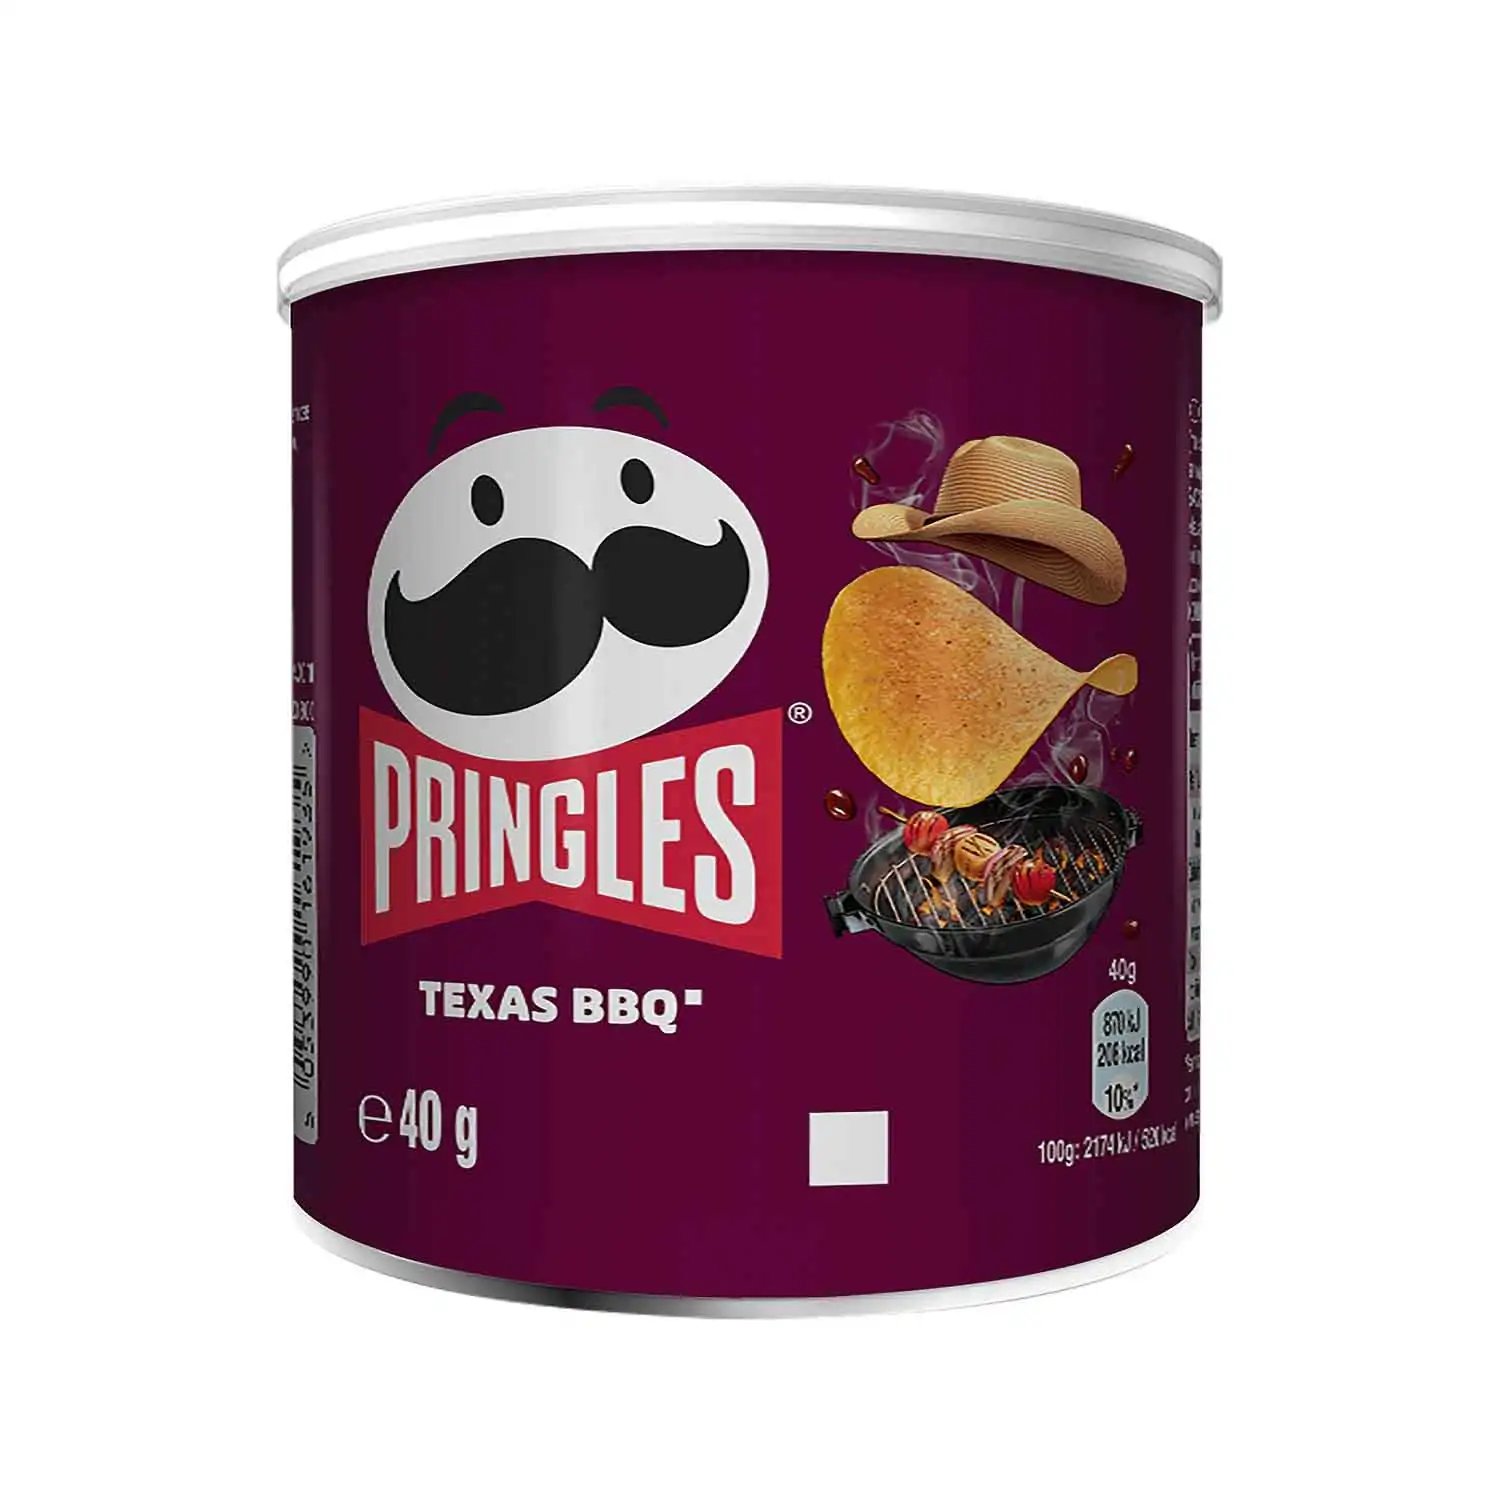 Pringles texas bbq sauce 40g - Buy at Real Tobacco